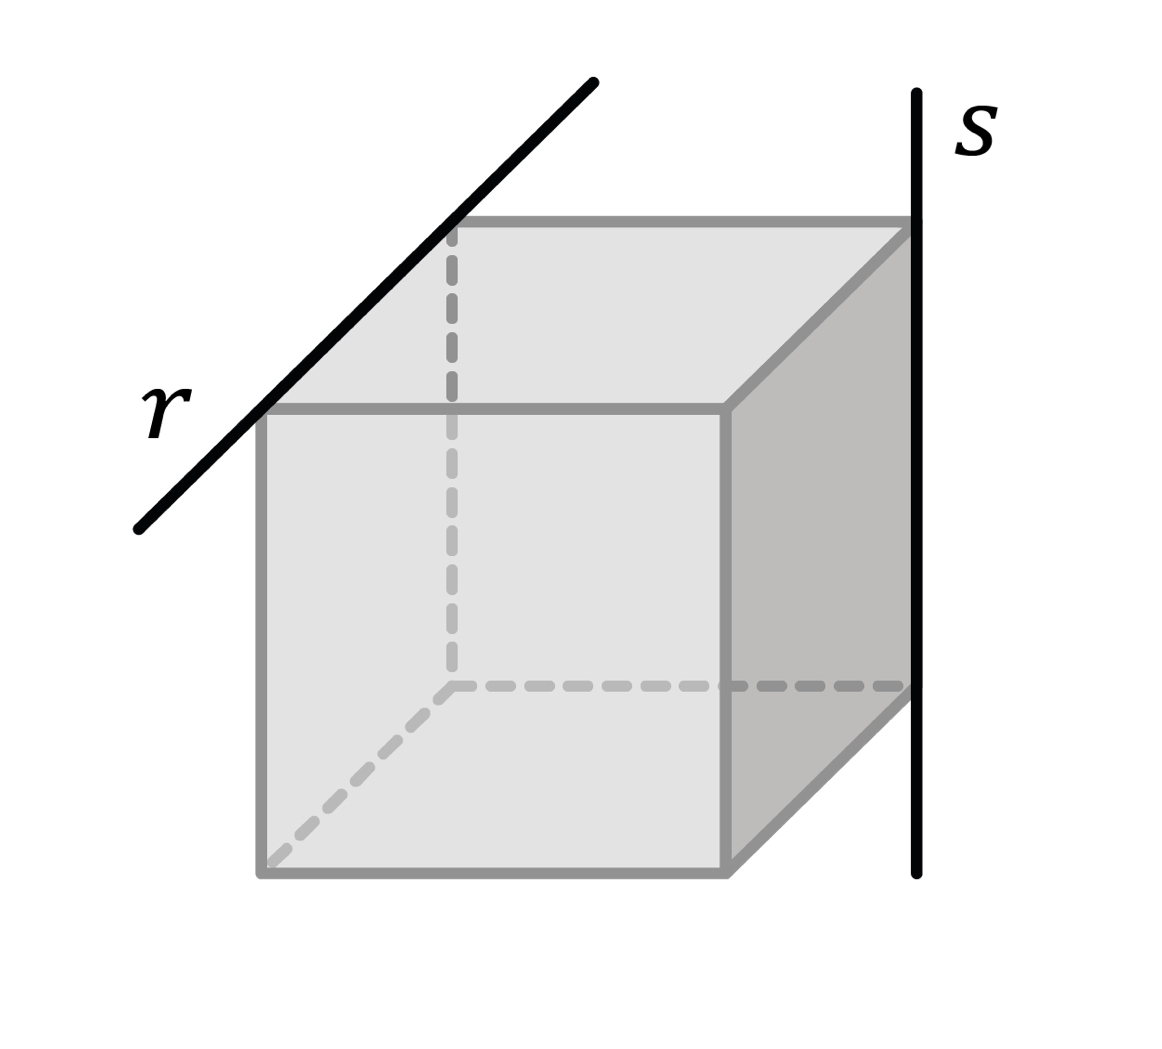 Matemáticas; Elementos geométricos; 2. ESO; Punto, recta y plano en el espacio 3D